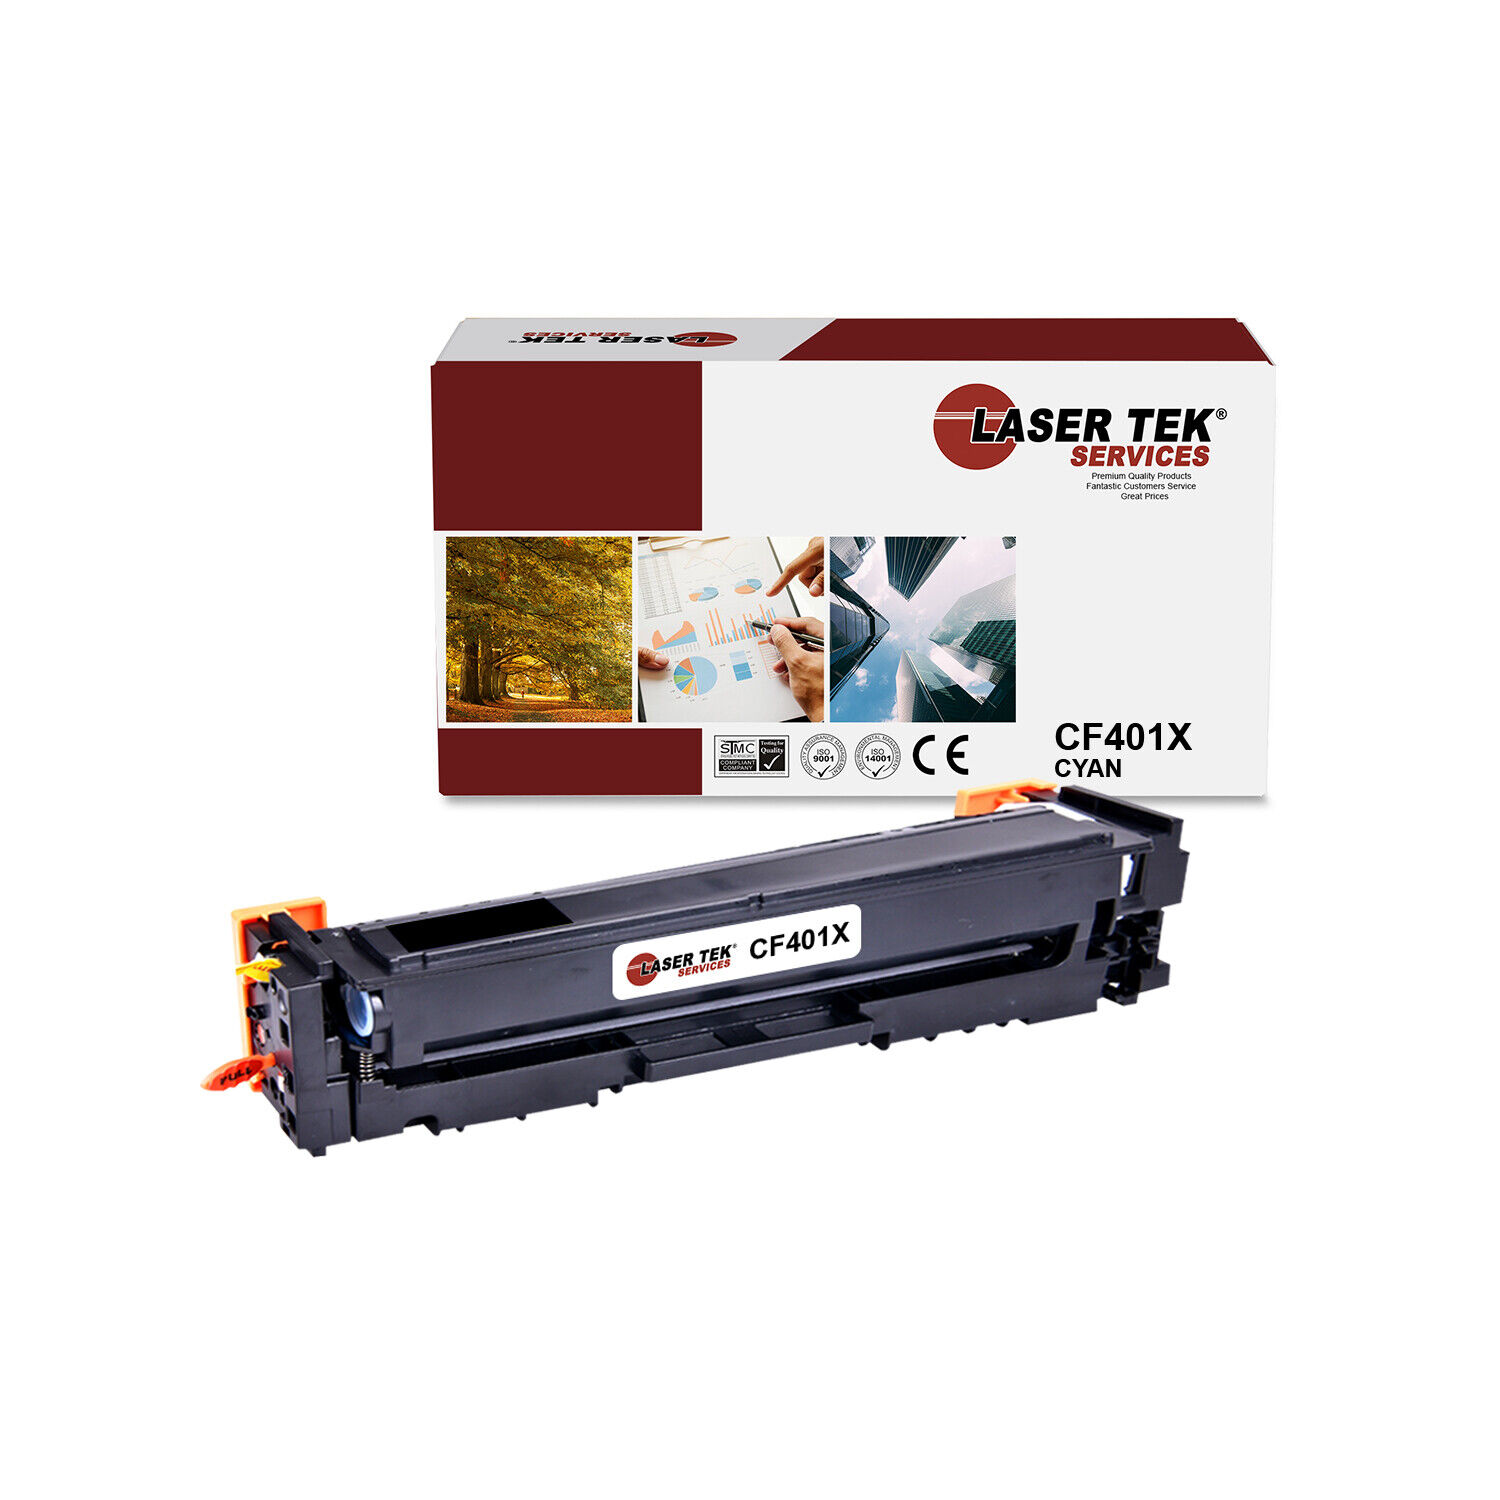 LTS 201X CF401X Cyan HY Compatible for HP LaserJet Pro M252dw M252n MFP Toner